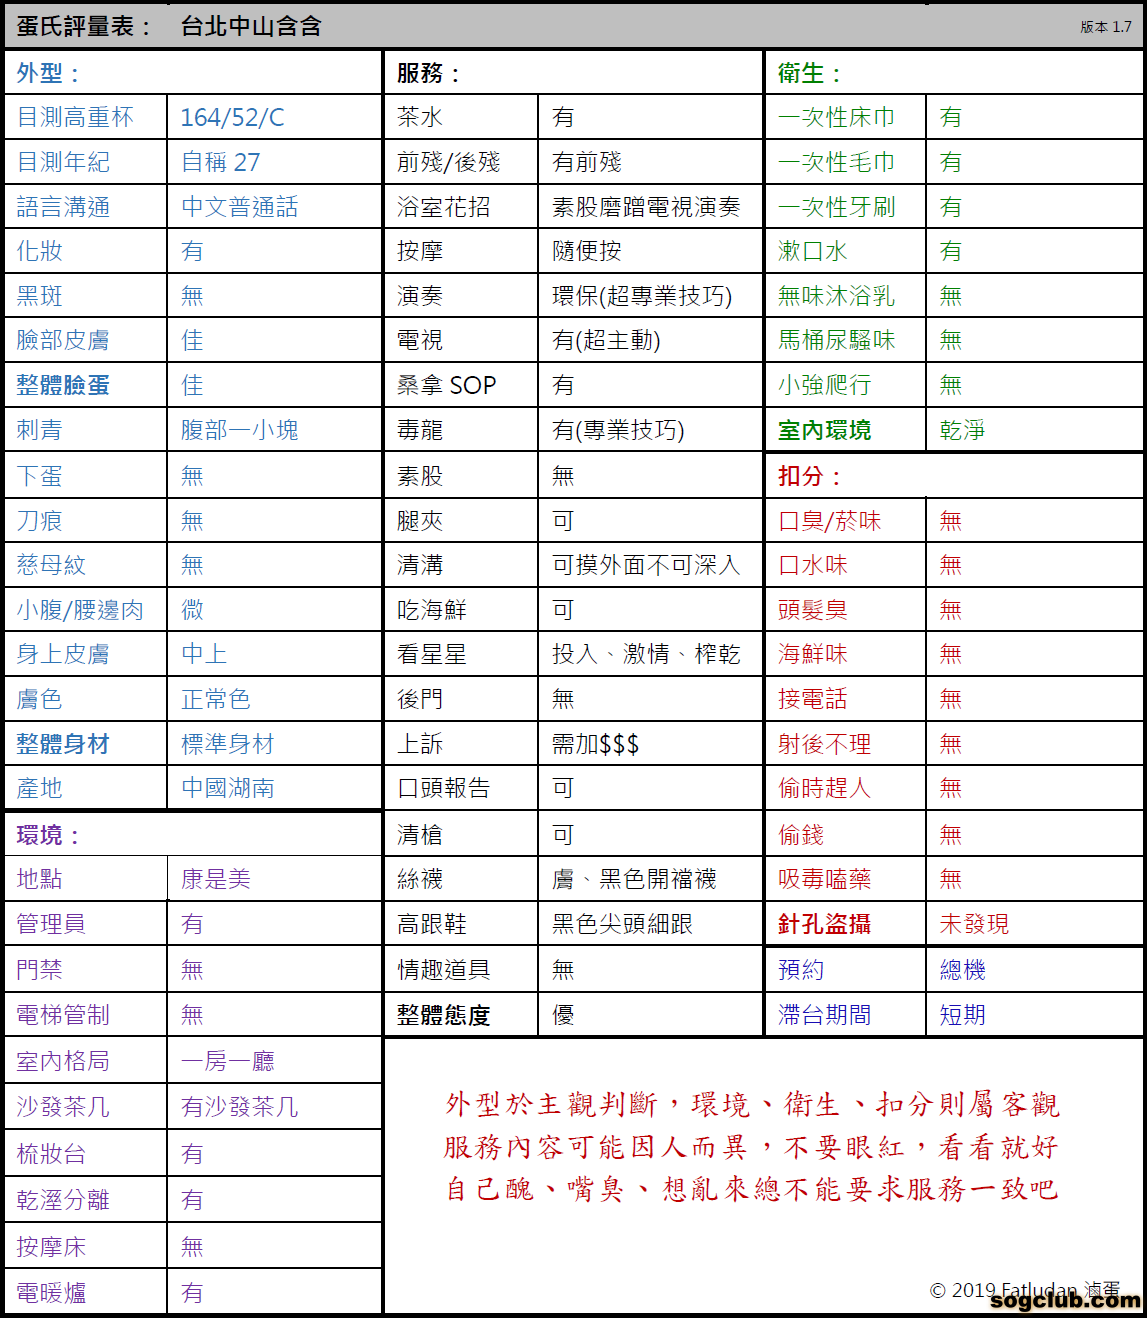 蛋氏評量表 - 台北中山含含.png